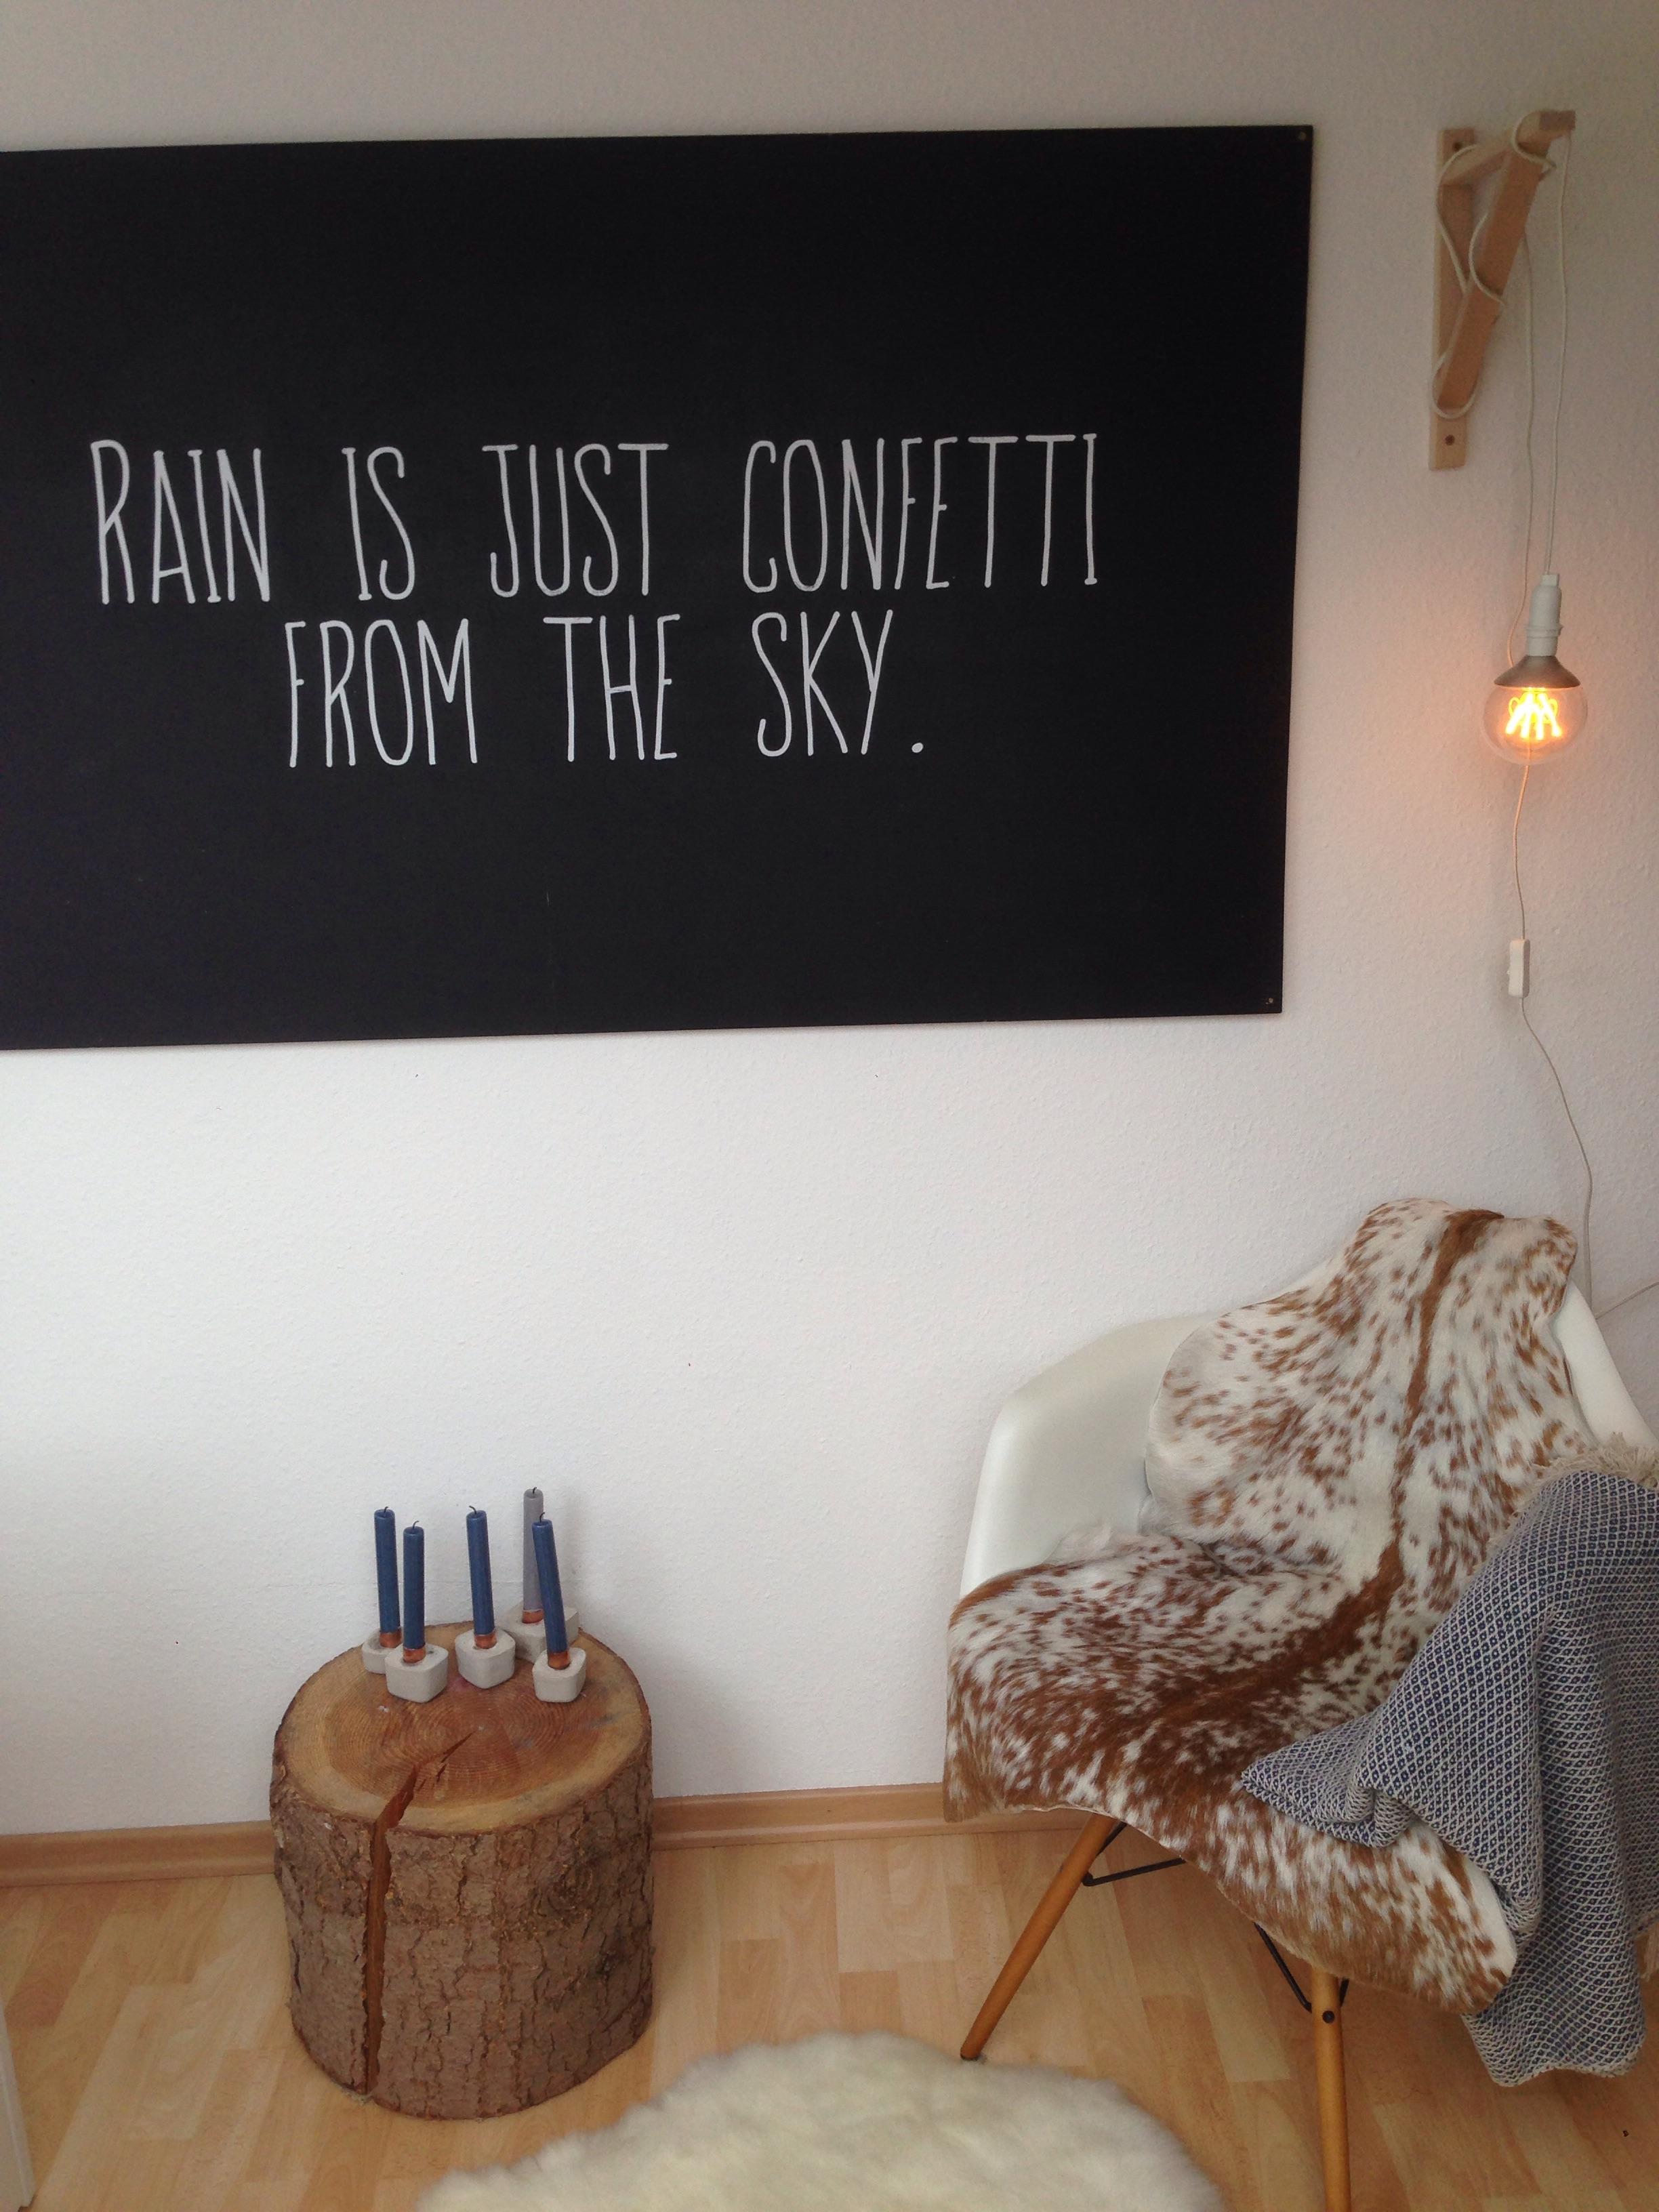 Ein kleiner Einblick in mein studentisches WG Zimmer #livingABC #living Studentlife #rain is just confetti from the sky 